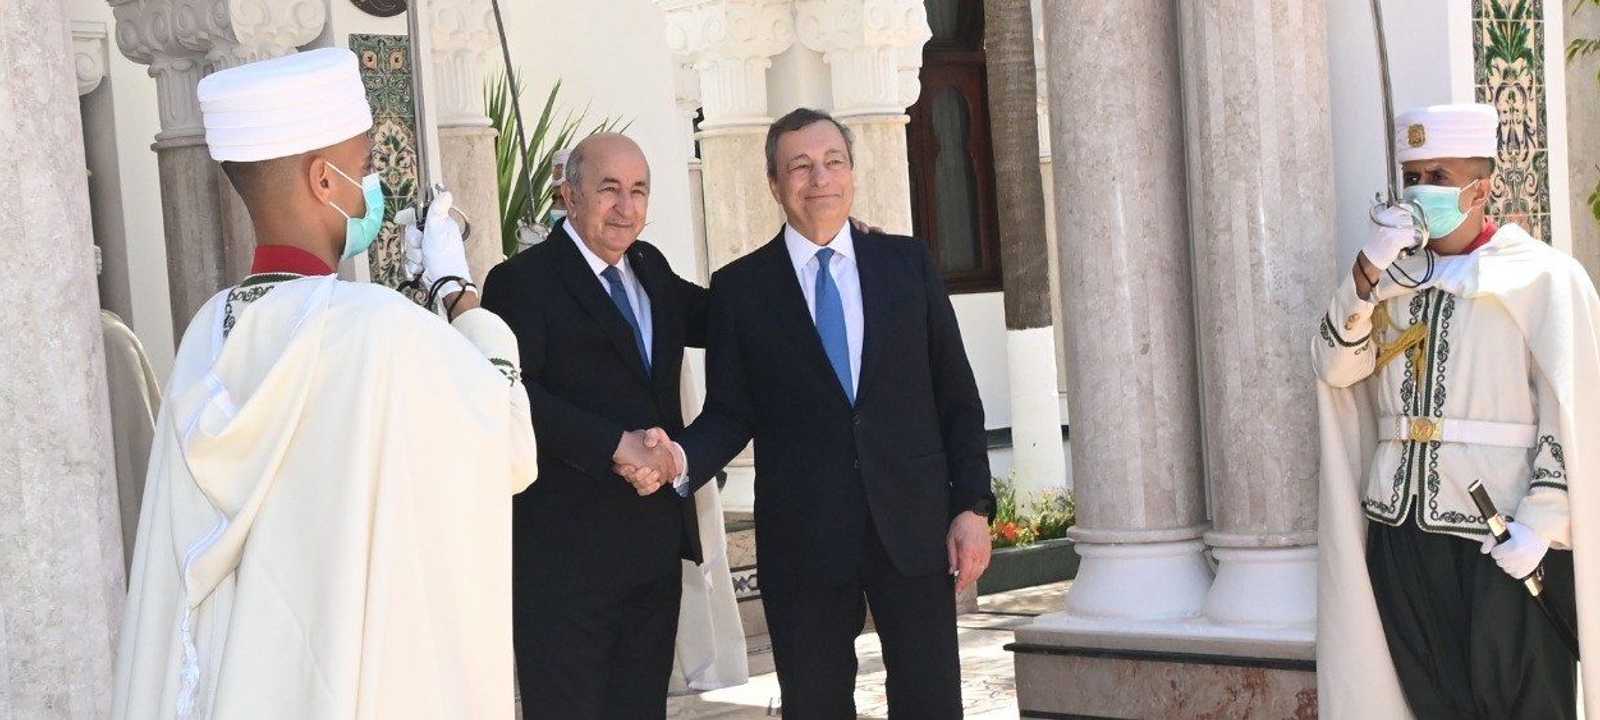 الرئيس الجزائري عبدالمجيد تبون يستقبل رئيس الوزراء الإيطالي